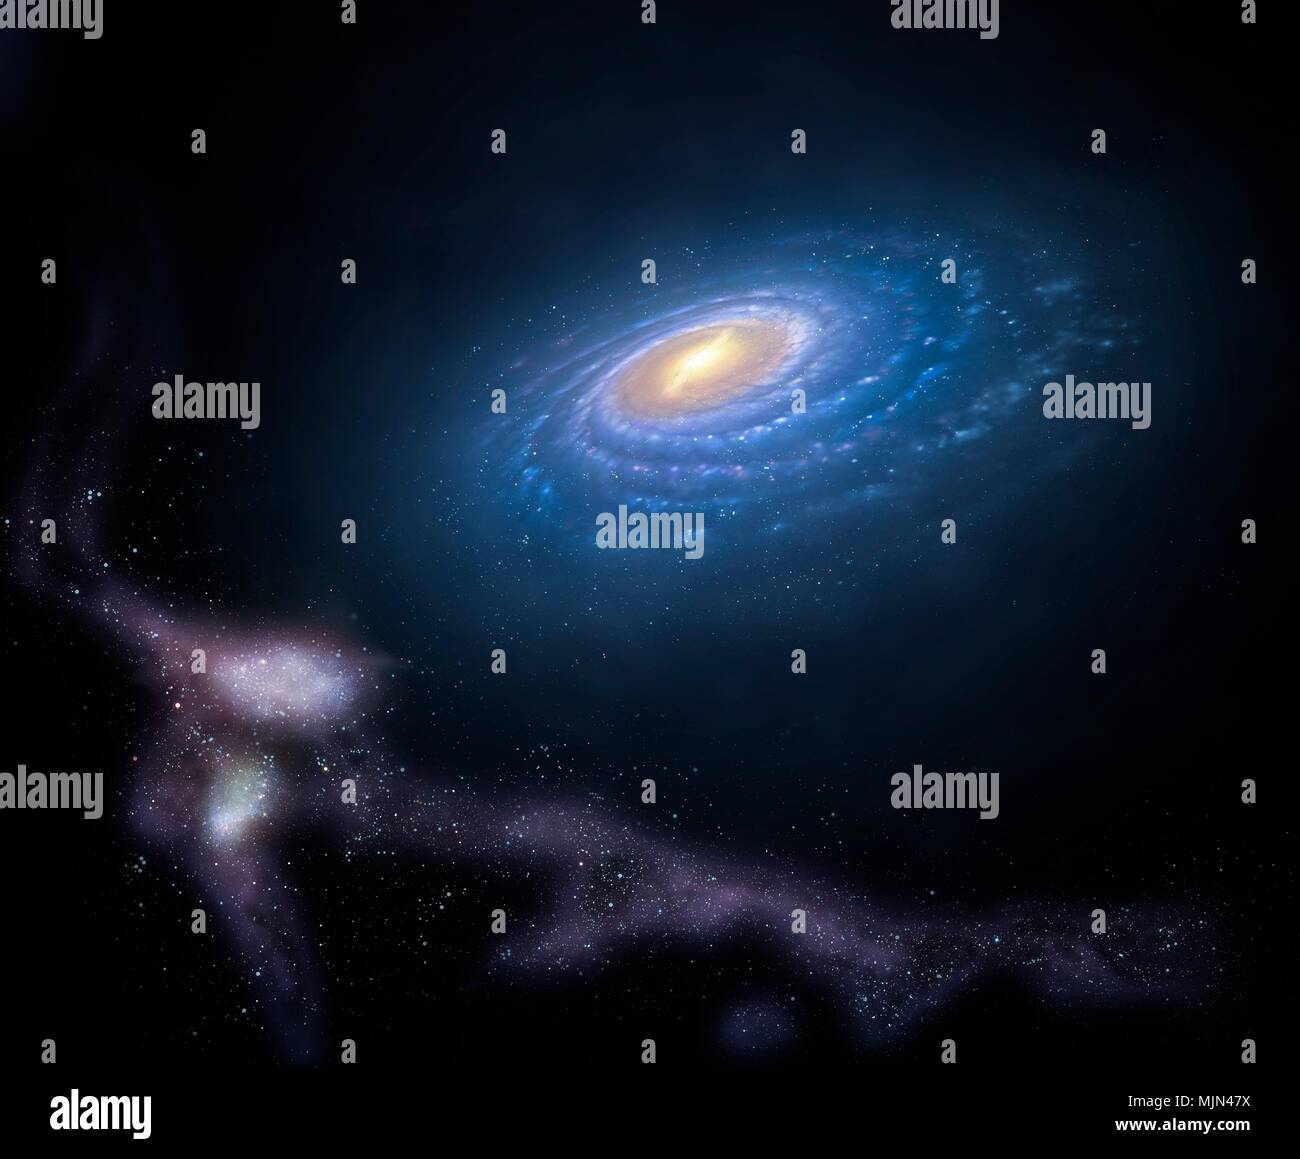 Illustration der Milchstraße so Magellanschen Strom genannt. Dies ist ein Stream von sich schnell bewegenden Gaswolken unserer Galaxie umkreist, mit den zwei kleinen Galaxien bezeichnete die Magellanschen Wolken. Da diese Galaxien umkreisen die Milchstraße, die gezeitenkräfte Sterne und Gas aus Ihnen ziehen, bilden die Multifunktionsleiste geformt. Die stream erstreckt sich über 180 Grad von Sky, das entspricht einer Länge von etwa 180.000 Lichtjahren. Stockfoto